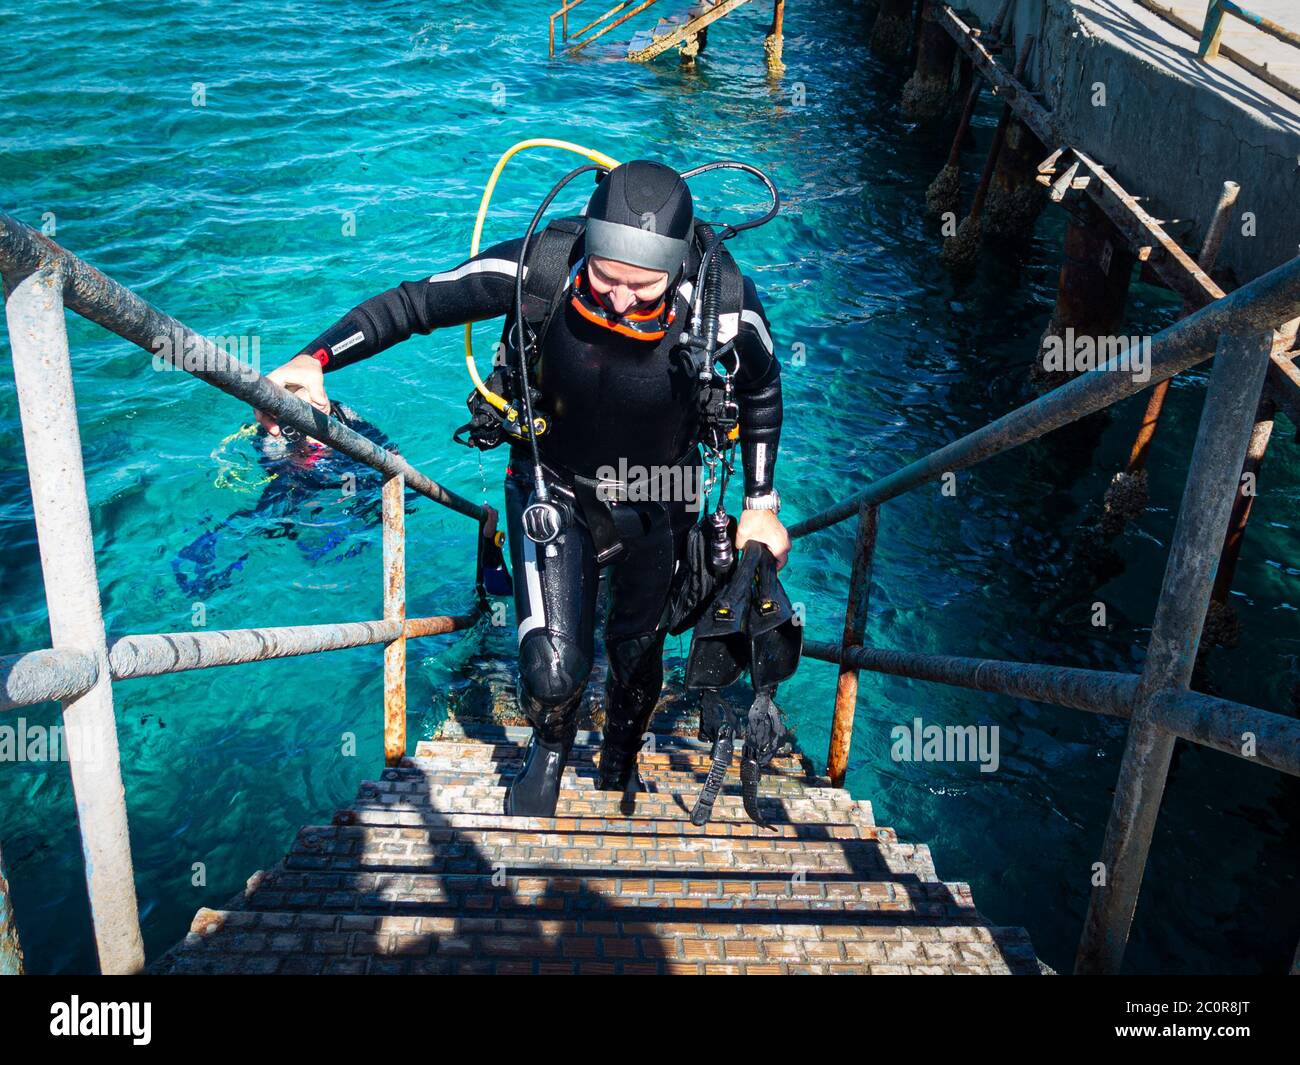 Un plongeur de plongée monte dans les escaliers jusqu'à la jetée, revenant d'une plongée sous-marine avec de l'équipement lourd sur son dos Banque D'Images